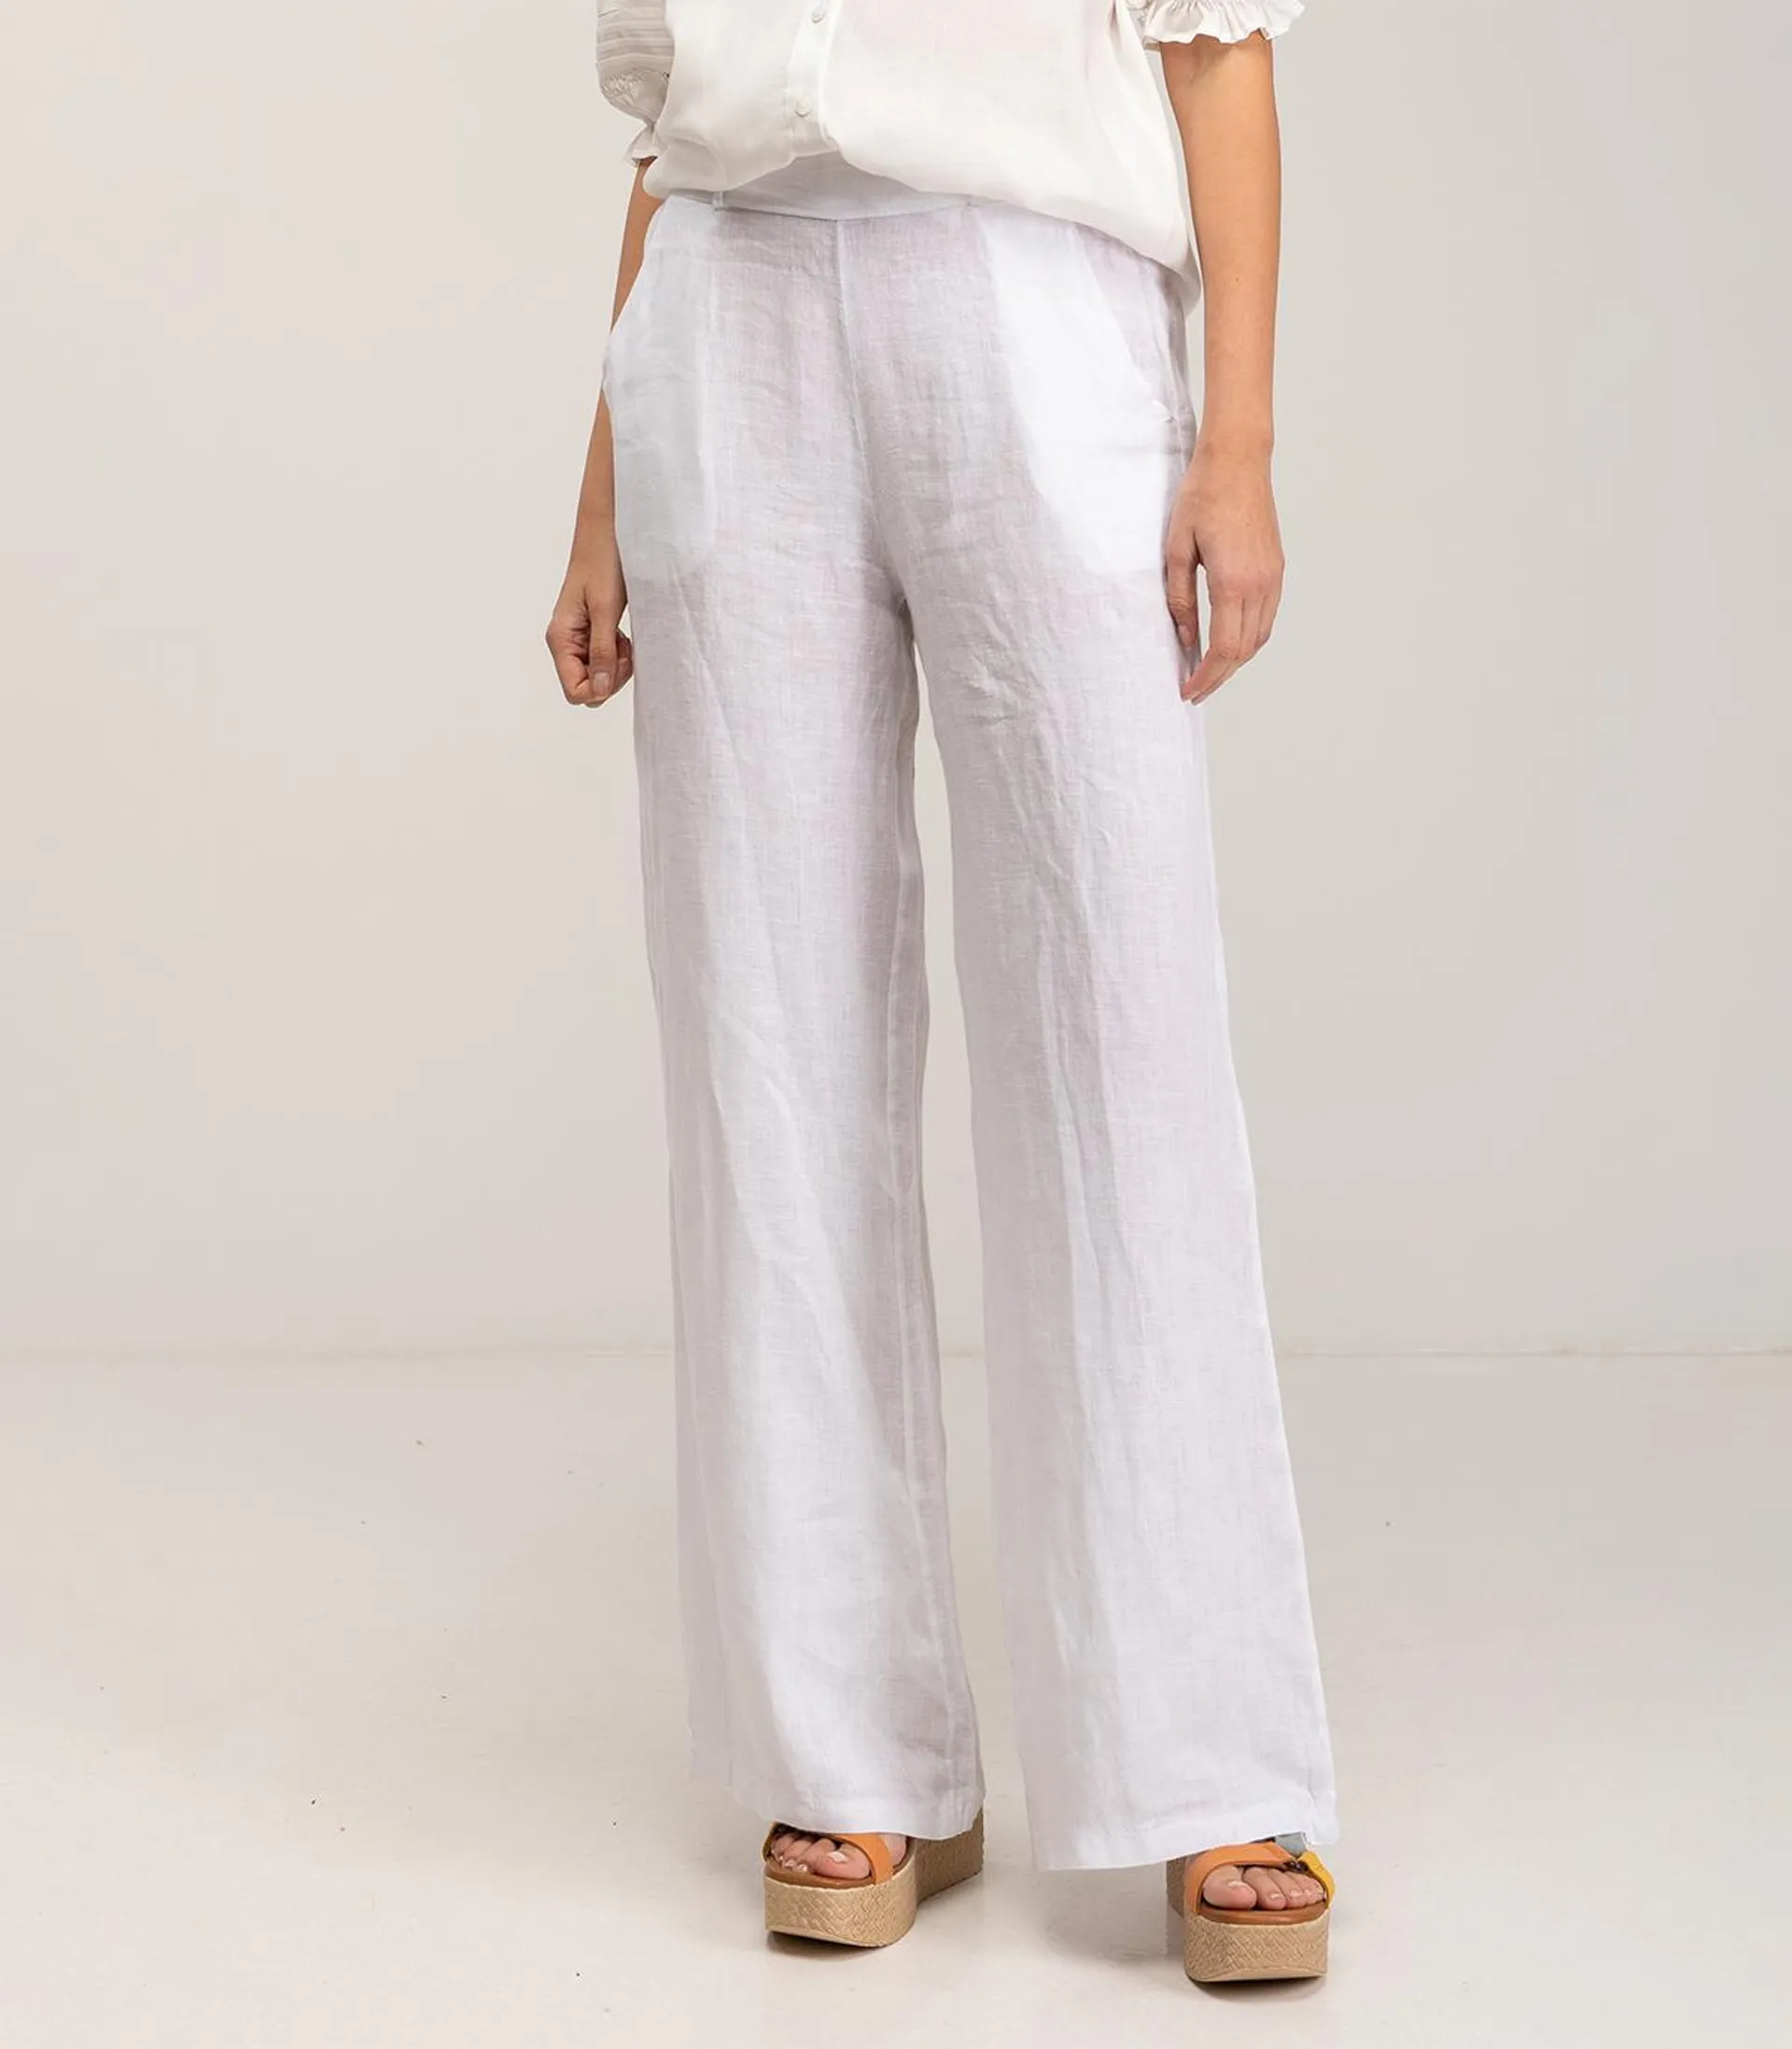 Pantalon de vestir ancho de lino con cintura elástica, bolsillos y tiro alto White